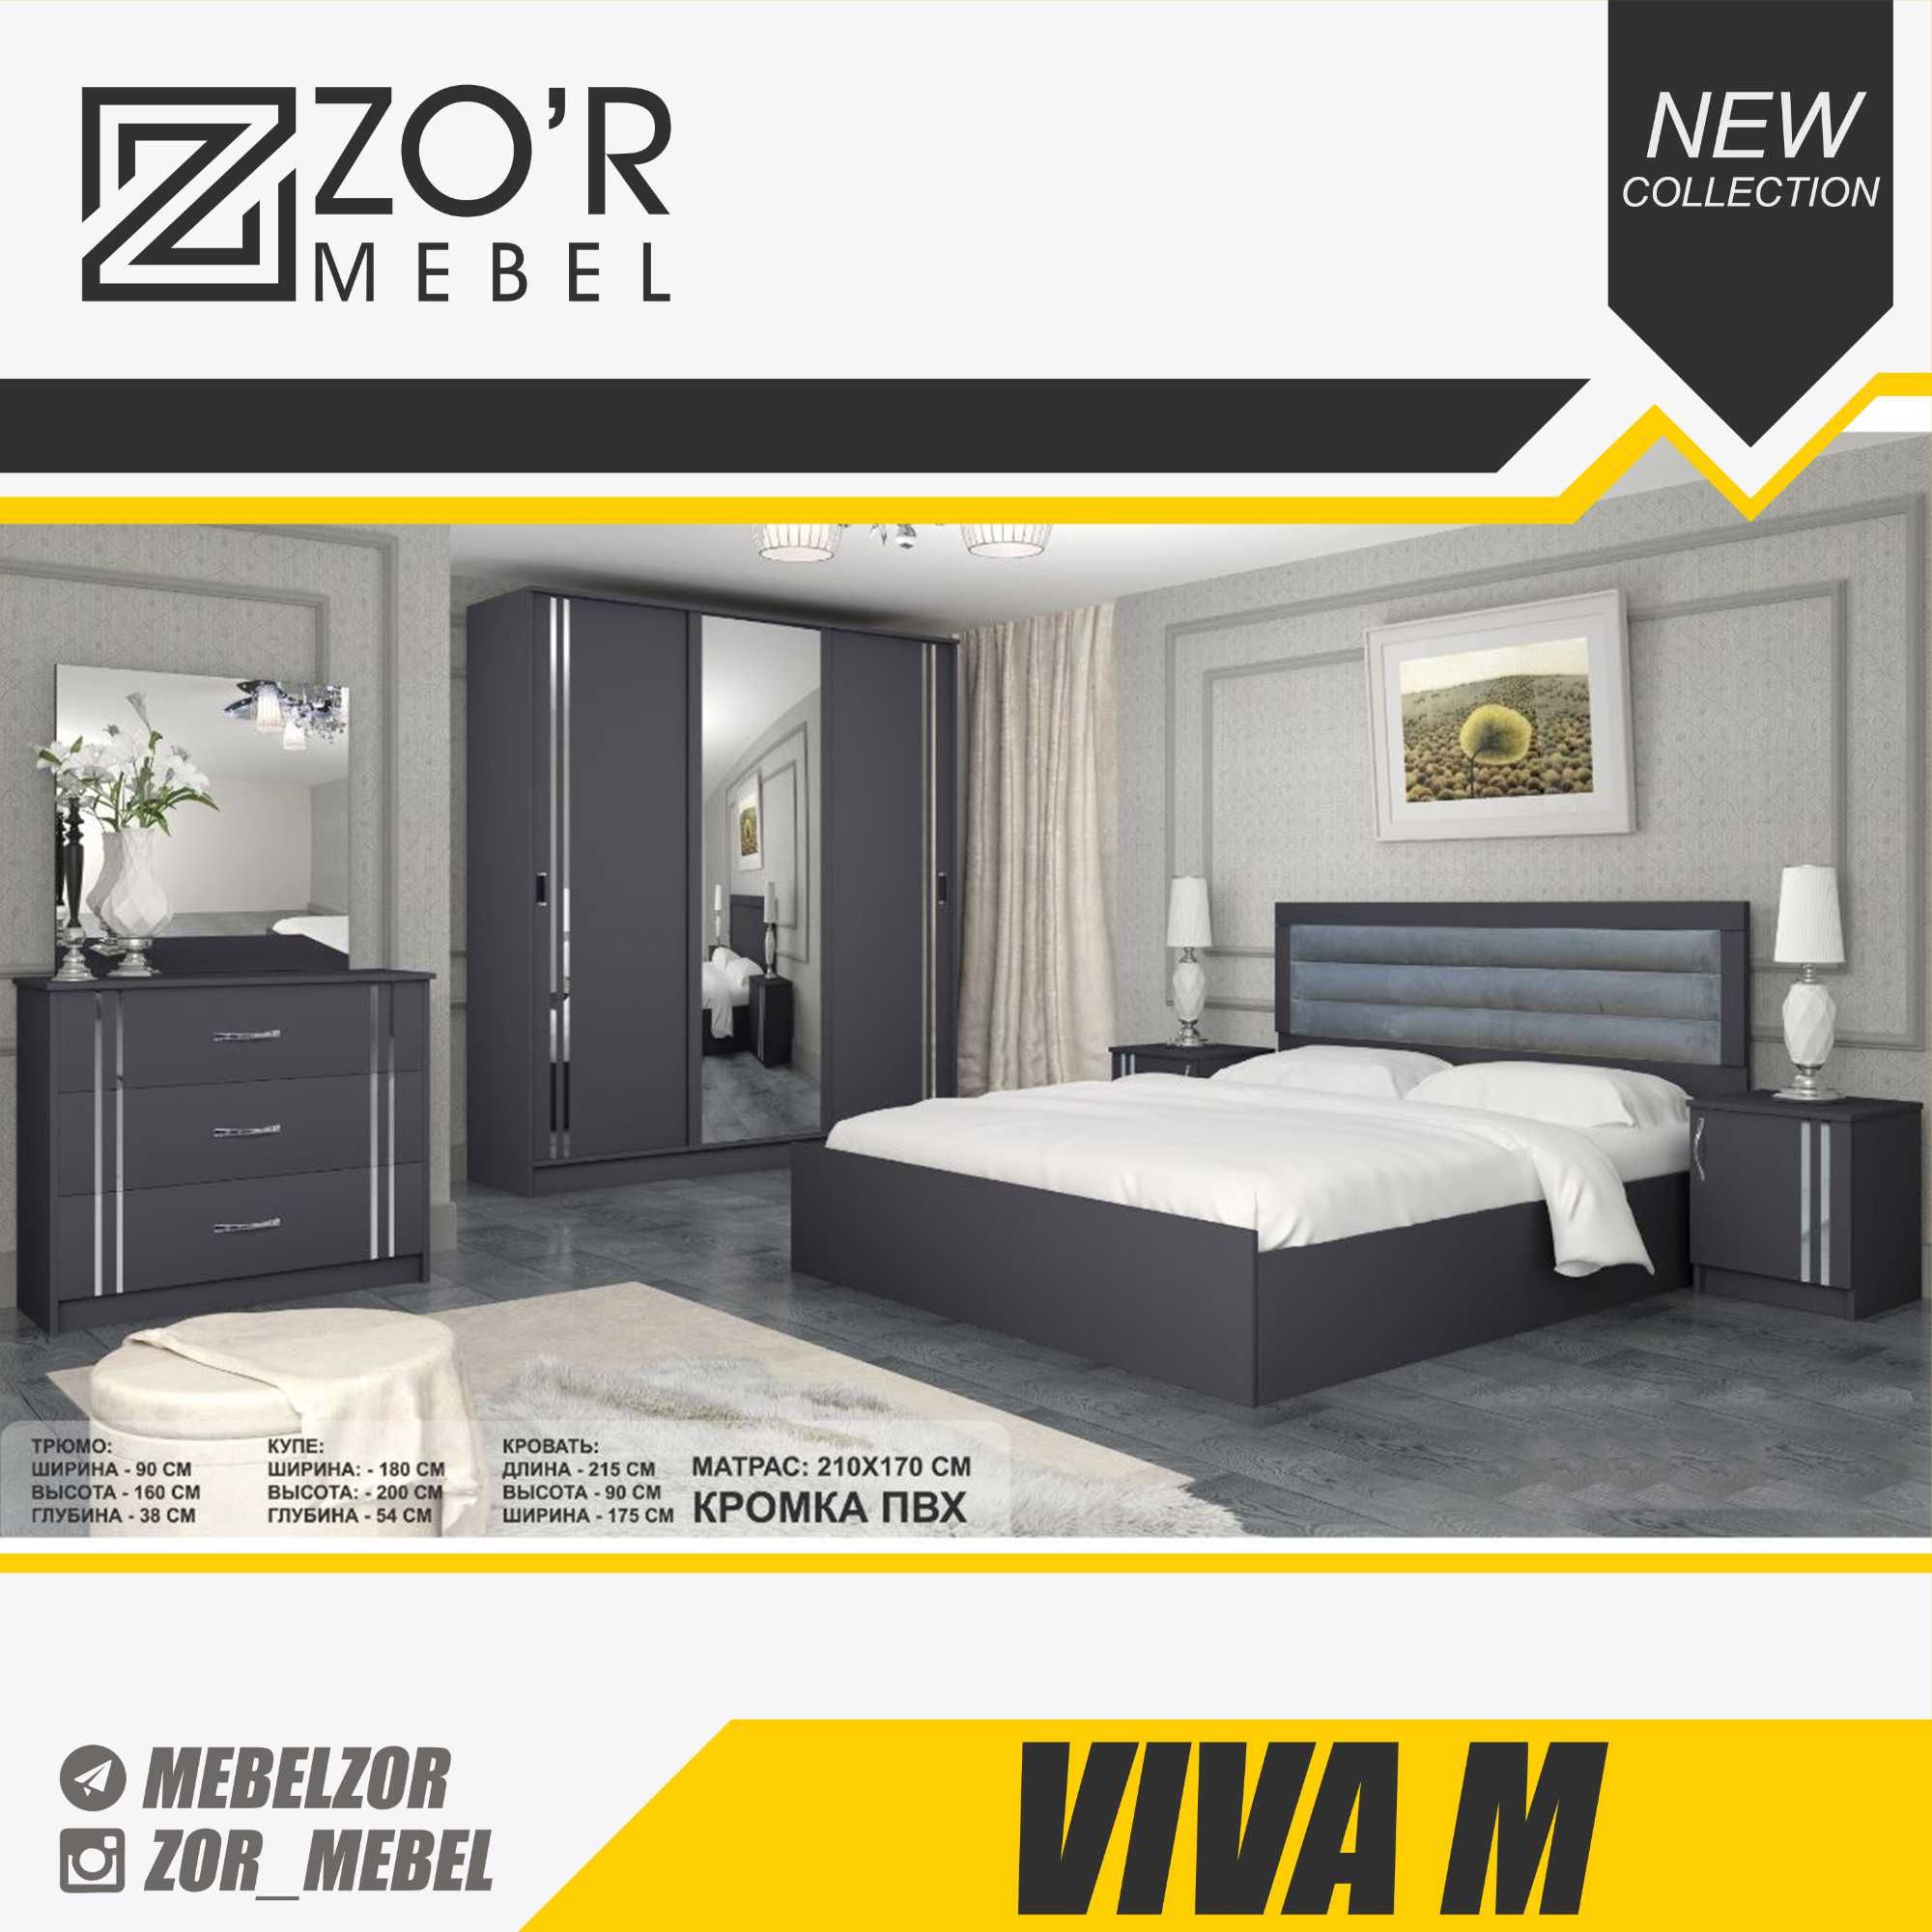 Ётоқхона мебеллар тўплами / Мебели для спальни "Viva" & "Yildiz"